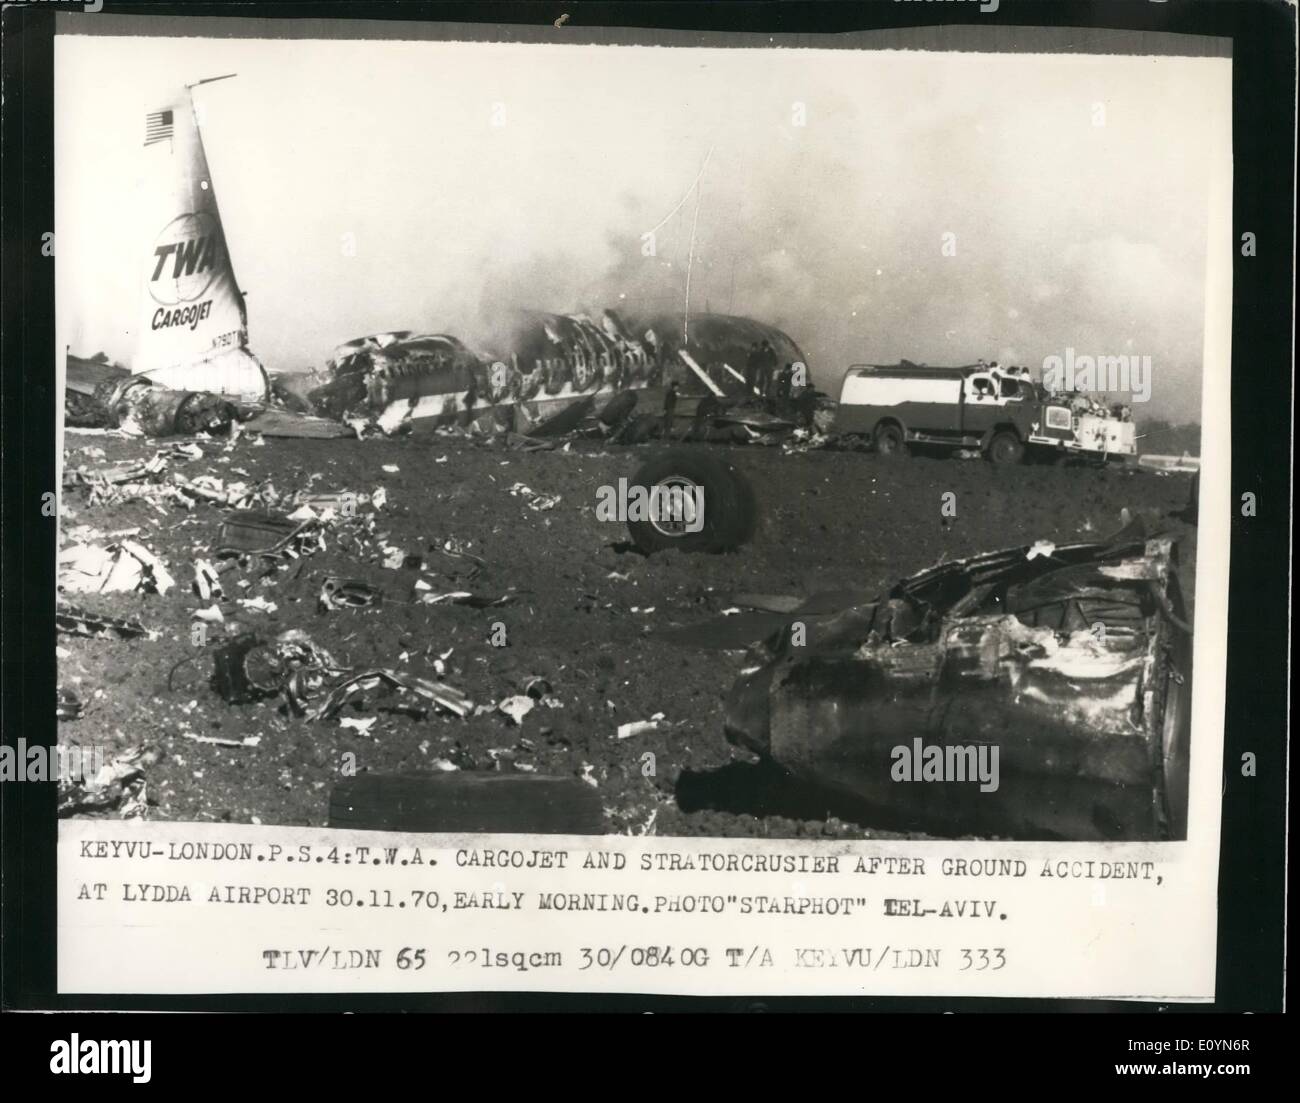 11. November 1970 - Flugzeuge kollidieren auf Ausreißer bei Lydda Airport. Zwei getötet: ein Trans World Airlines Boeing 707-Fracht-Jet und einem israelischen Flugzeug kollidierte und ging in Flammen auf der Landebahn in Lydda, Tel Aviv, früh am Morgen. Zwei Mitglieder der Besatzung des israelischen Flugzeugs kamen ums Leben. Die Kollision ereignete sich wie die Boeing 707 ausziehen wollte und das israelische Flugzeug wurde von einem Traktor geschleppt. Foto zeigt Blick auf das Wrack nach dem Zusammenstoß auf der Landebahn in Lydda Flughafen Tel Aviv am frühen Morgen. Stockfoto